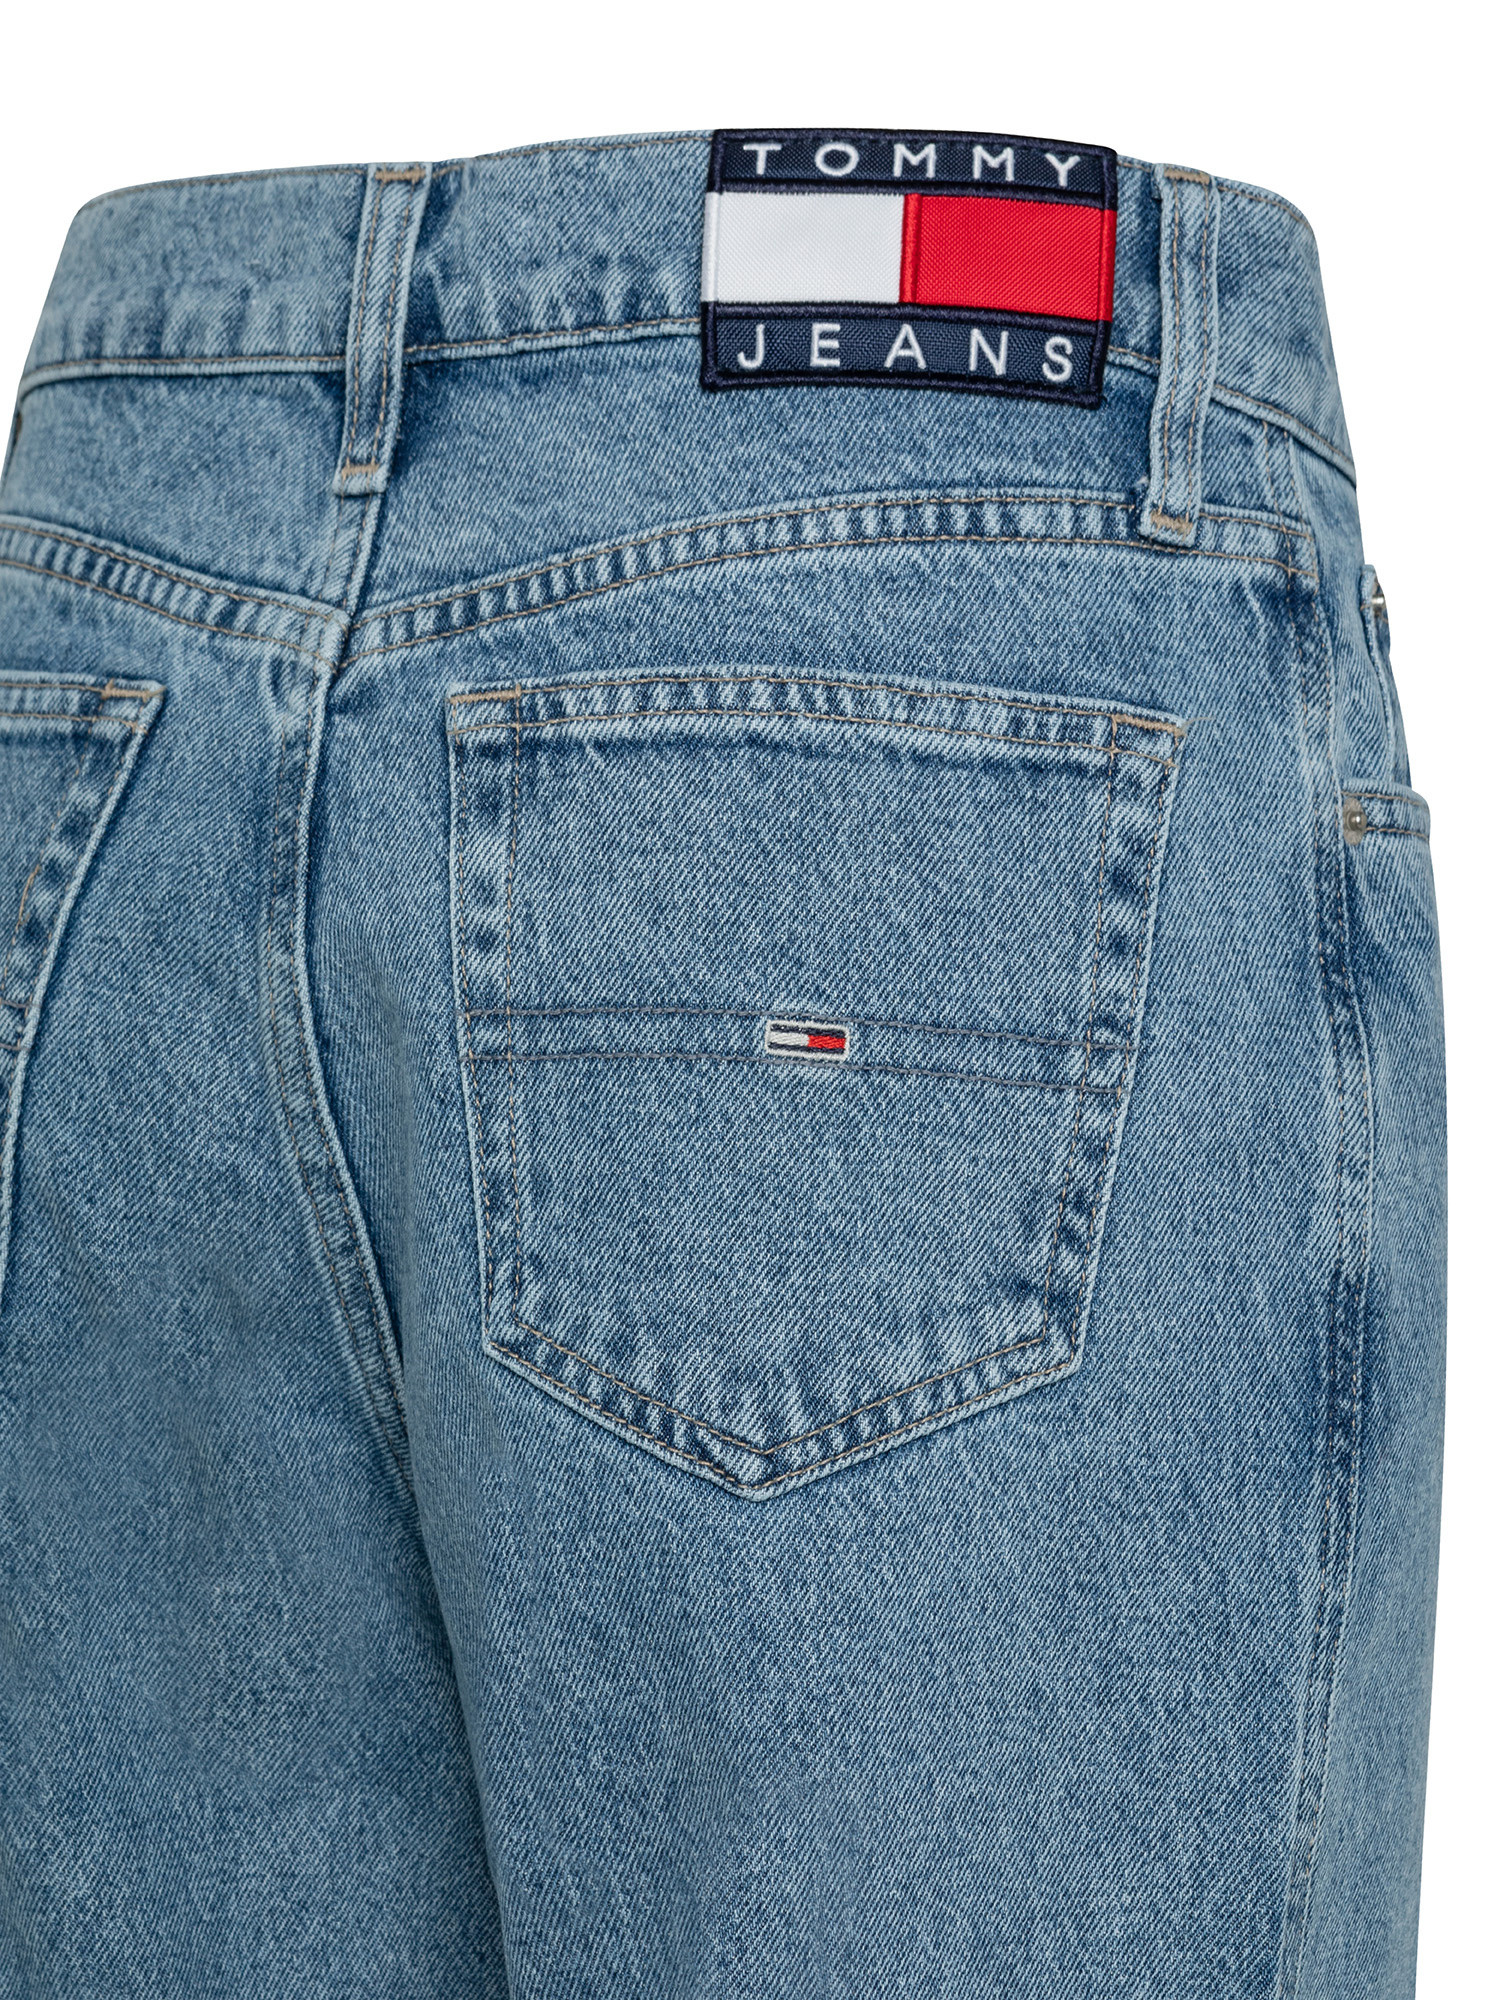 Tommy Jeans - Jeans a vita alta, Denim, large image number 2